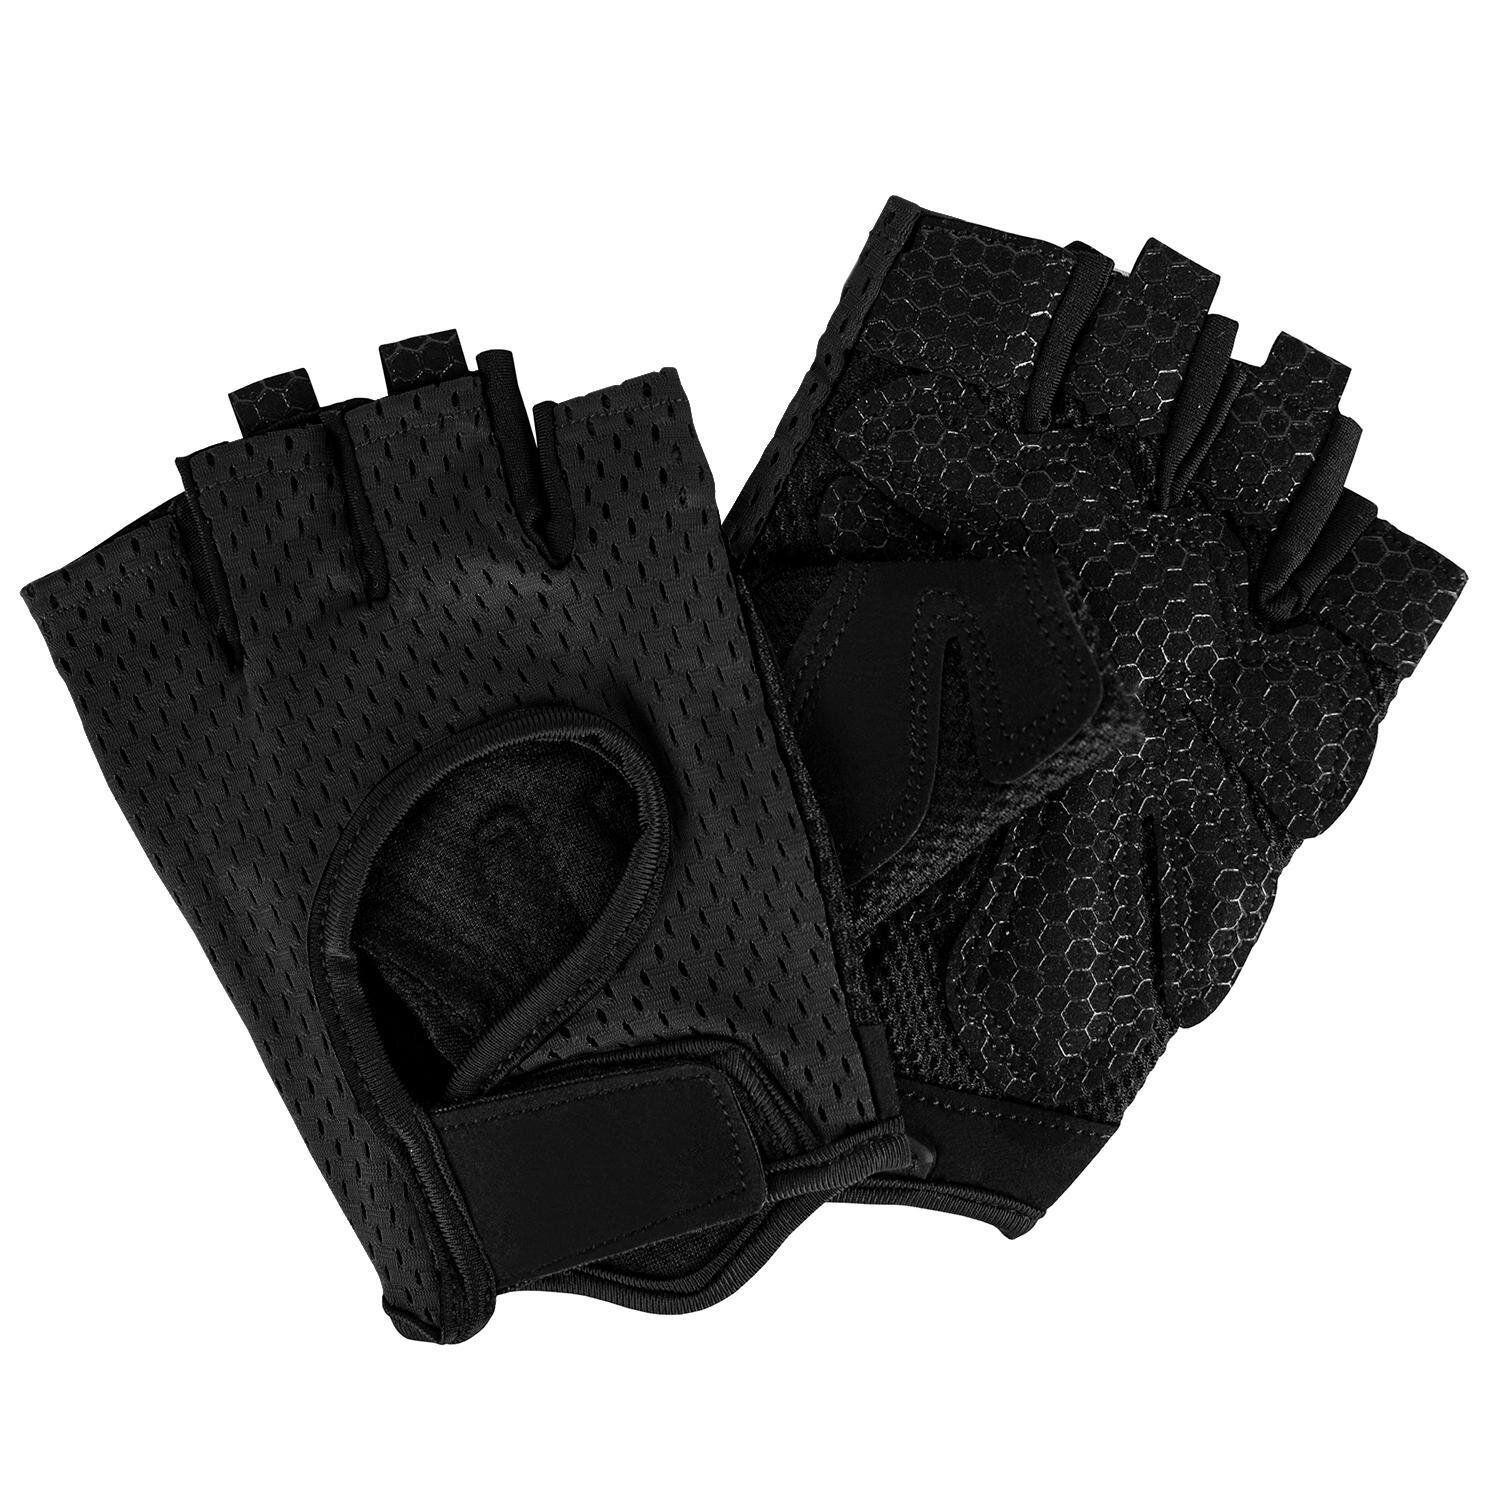 Fitness Gloves, Black - M